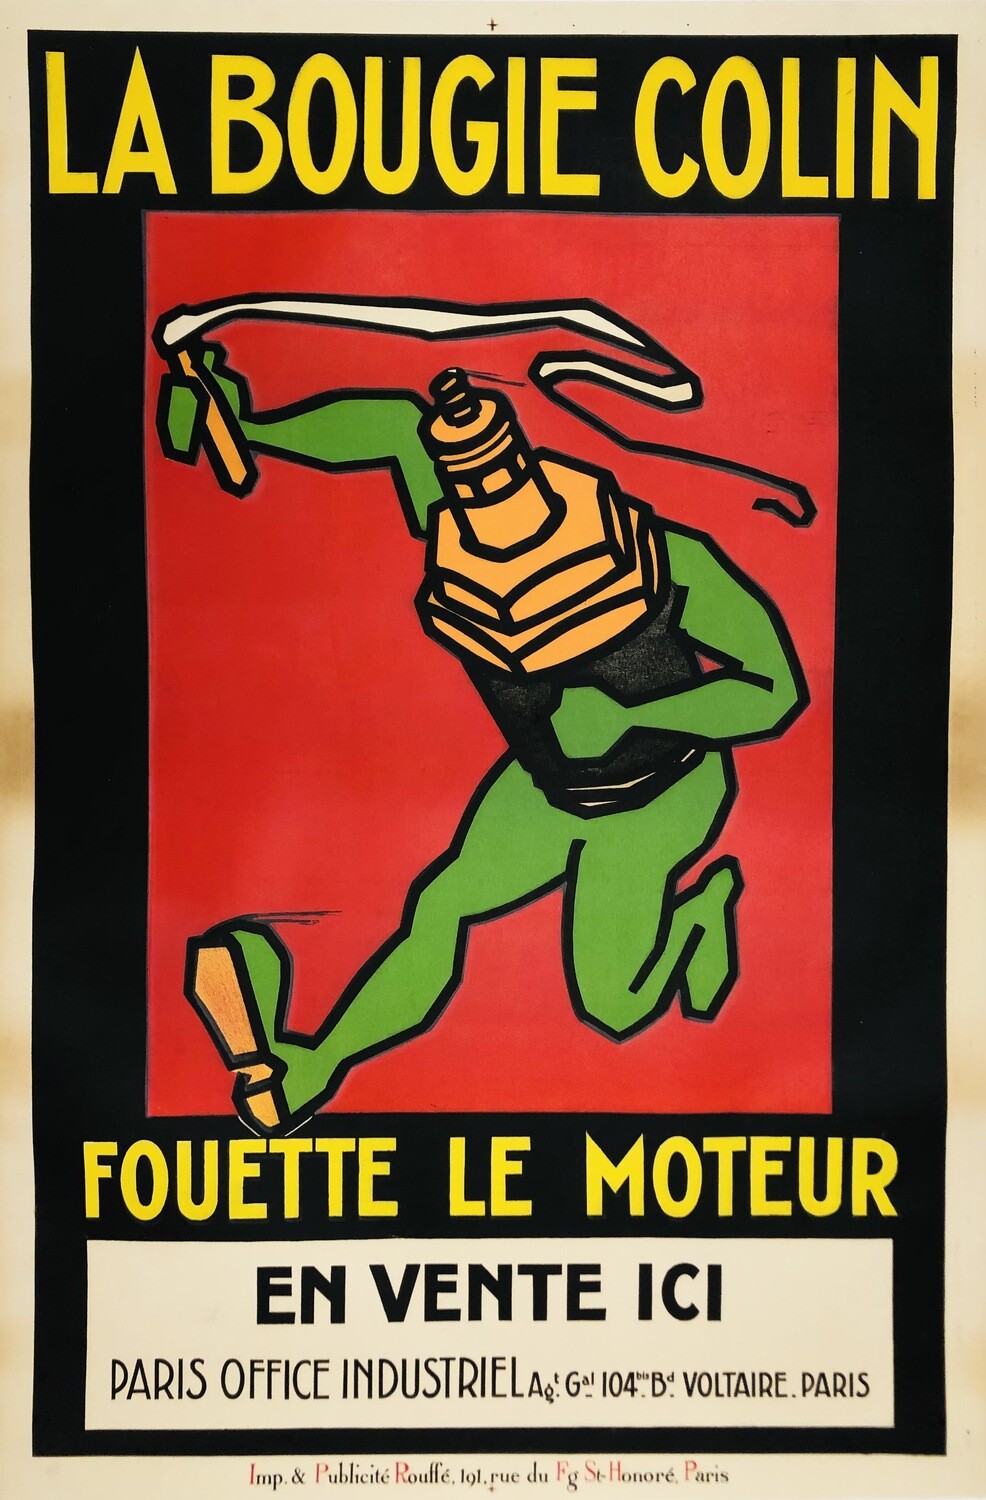 Rouffé, 1930 - LA BOUGIE COLIN - Original lithographic vintage affiche - cm 117 x 78 - in 46 x 30,7